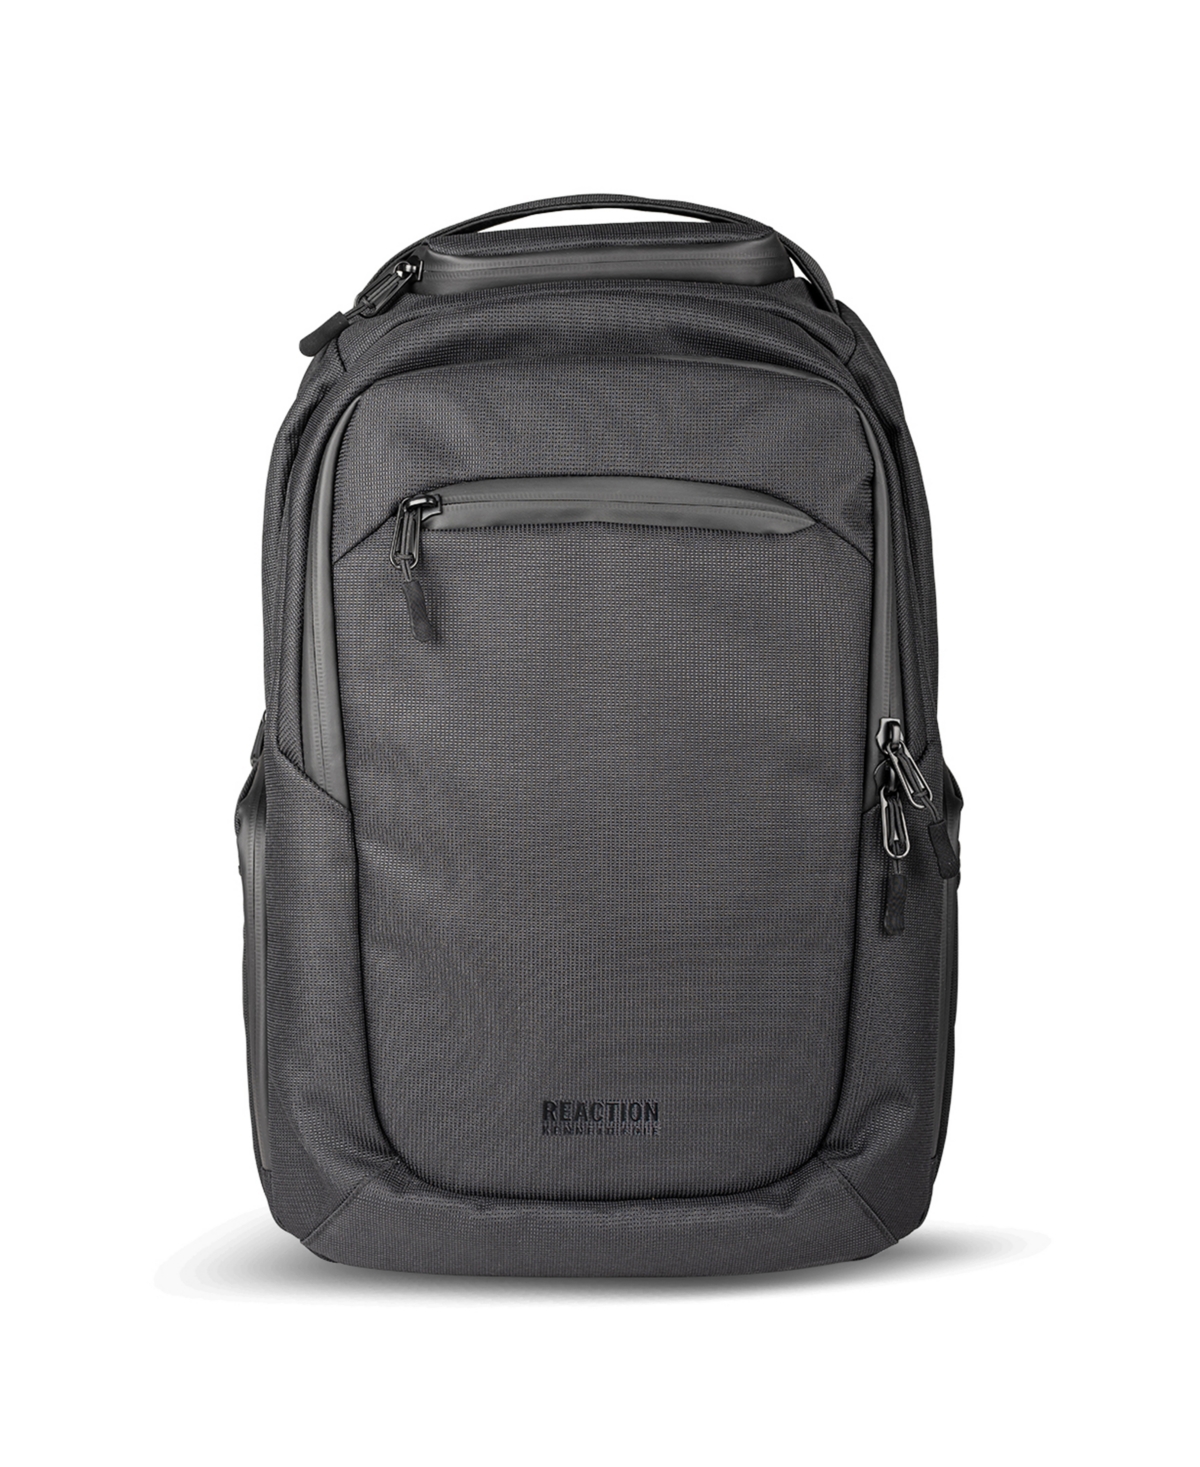 Parker 17" Laptop Backpack - Black